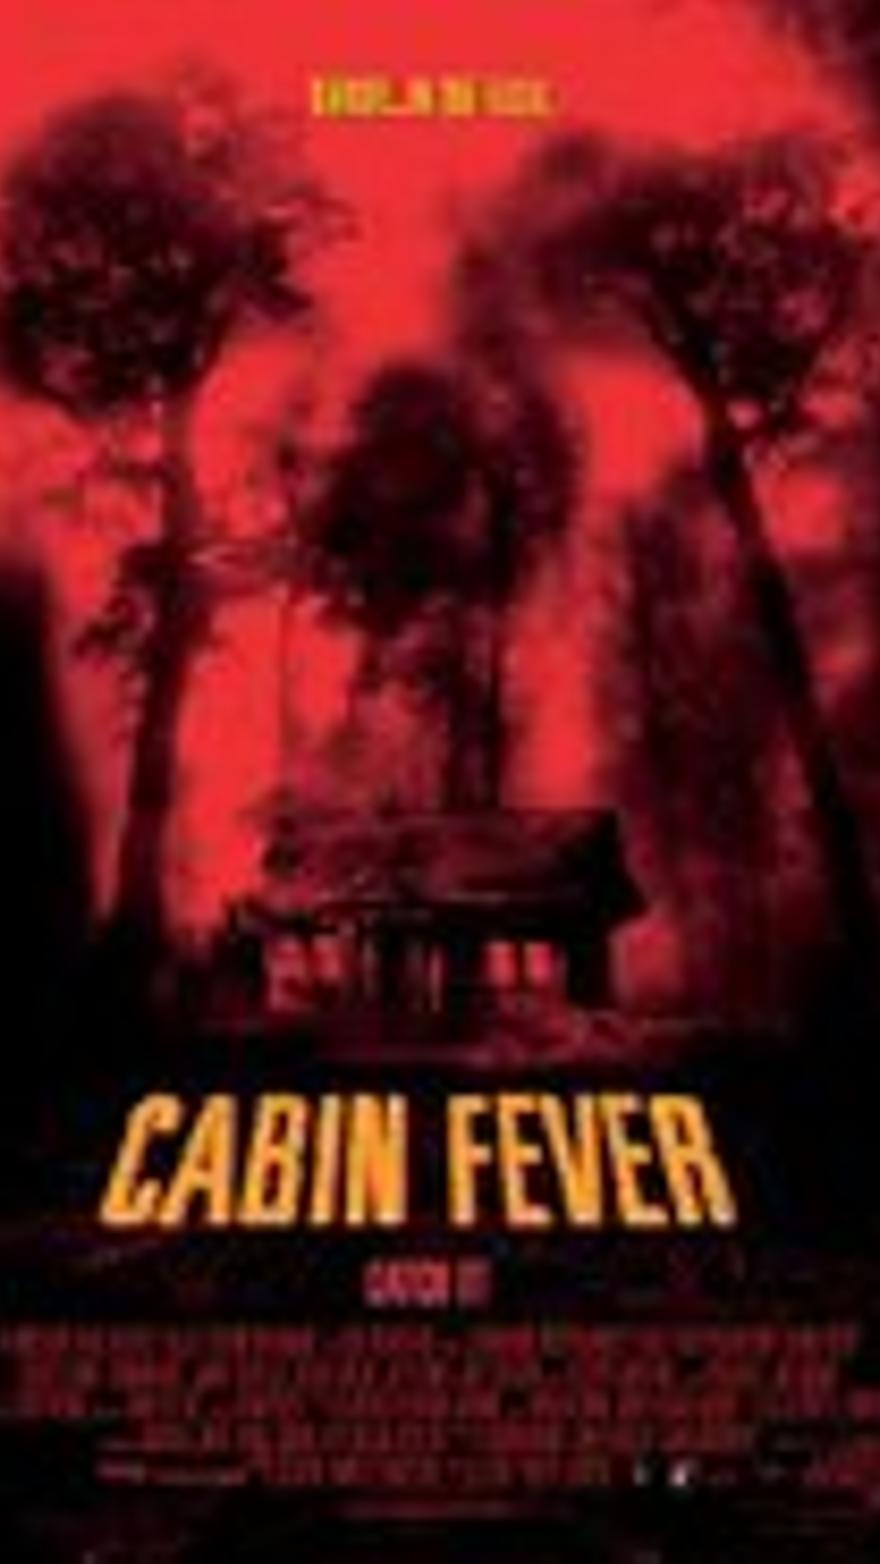 Cabin fever